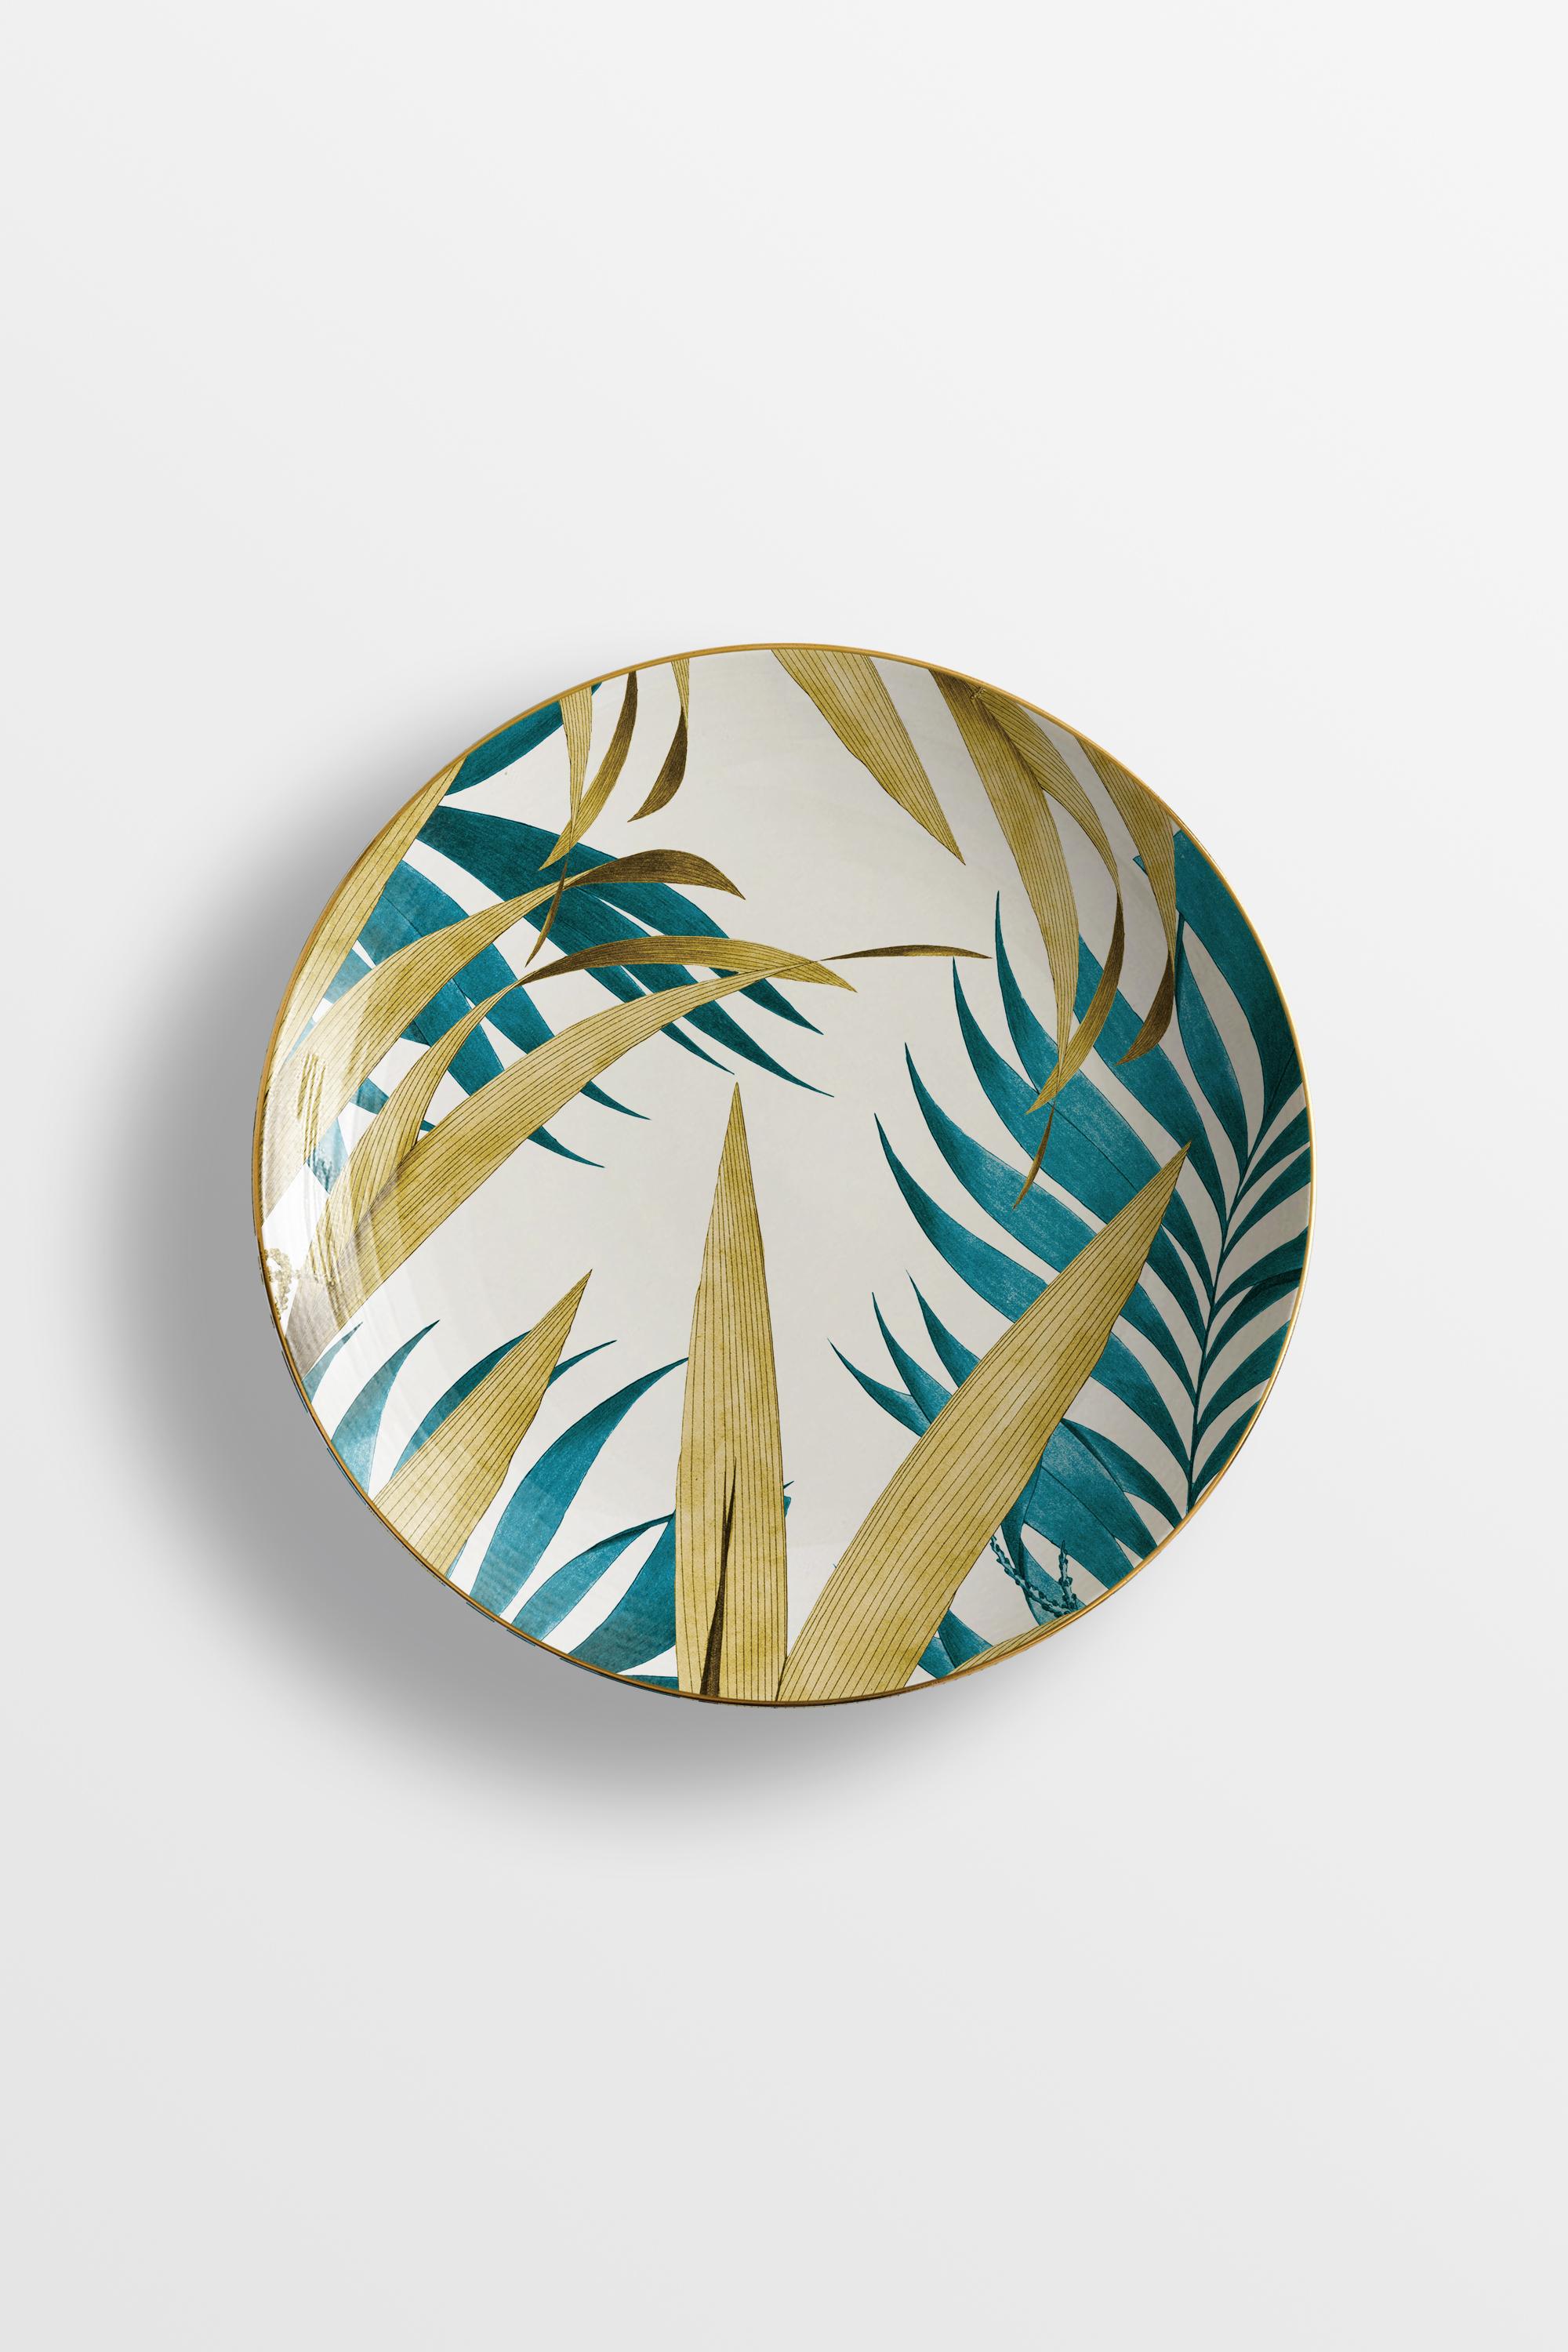 Las Palmas, Six Contemporary Porcelain soup plates with Decorative Design For Sale 2